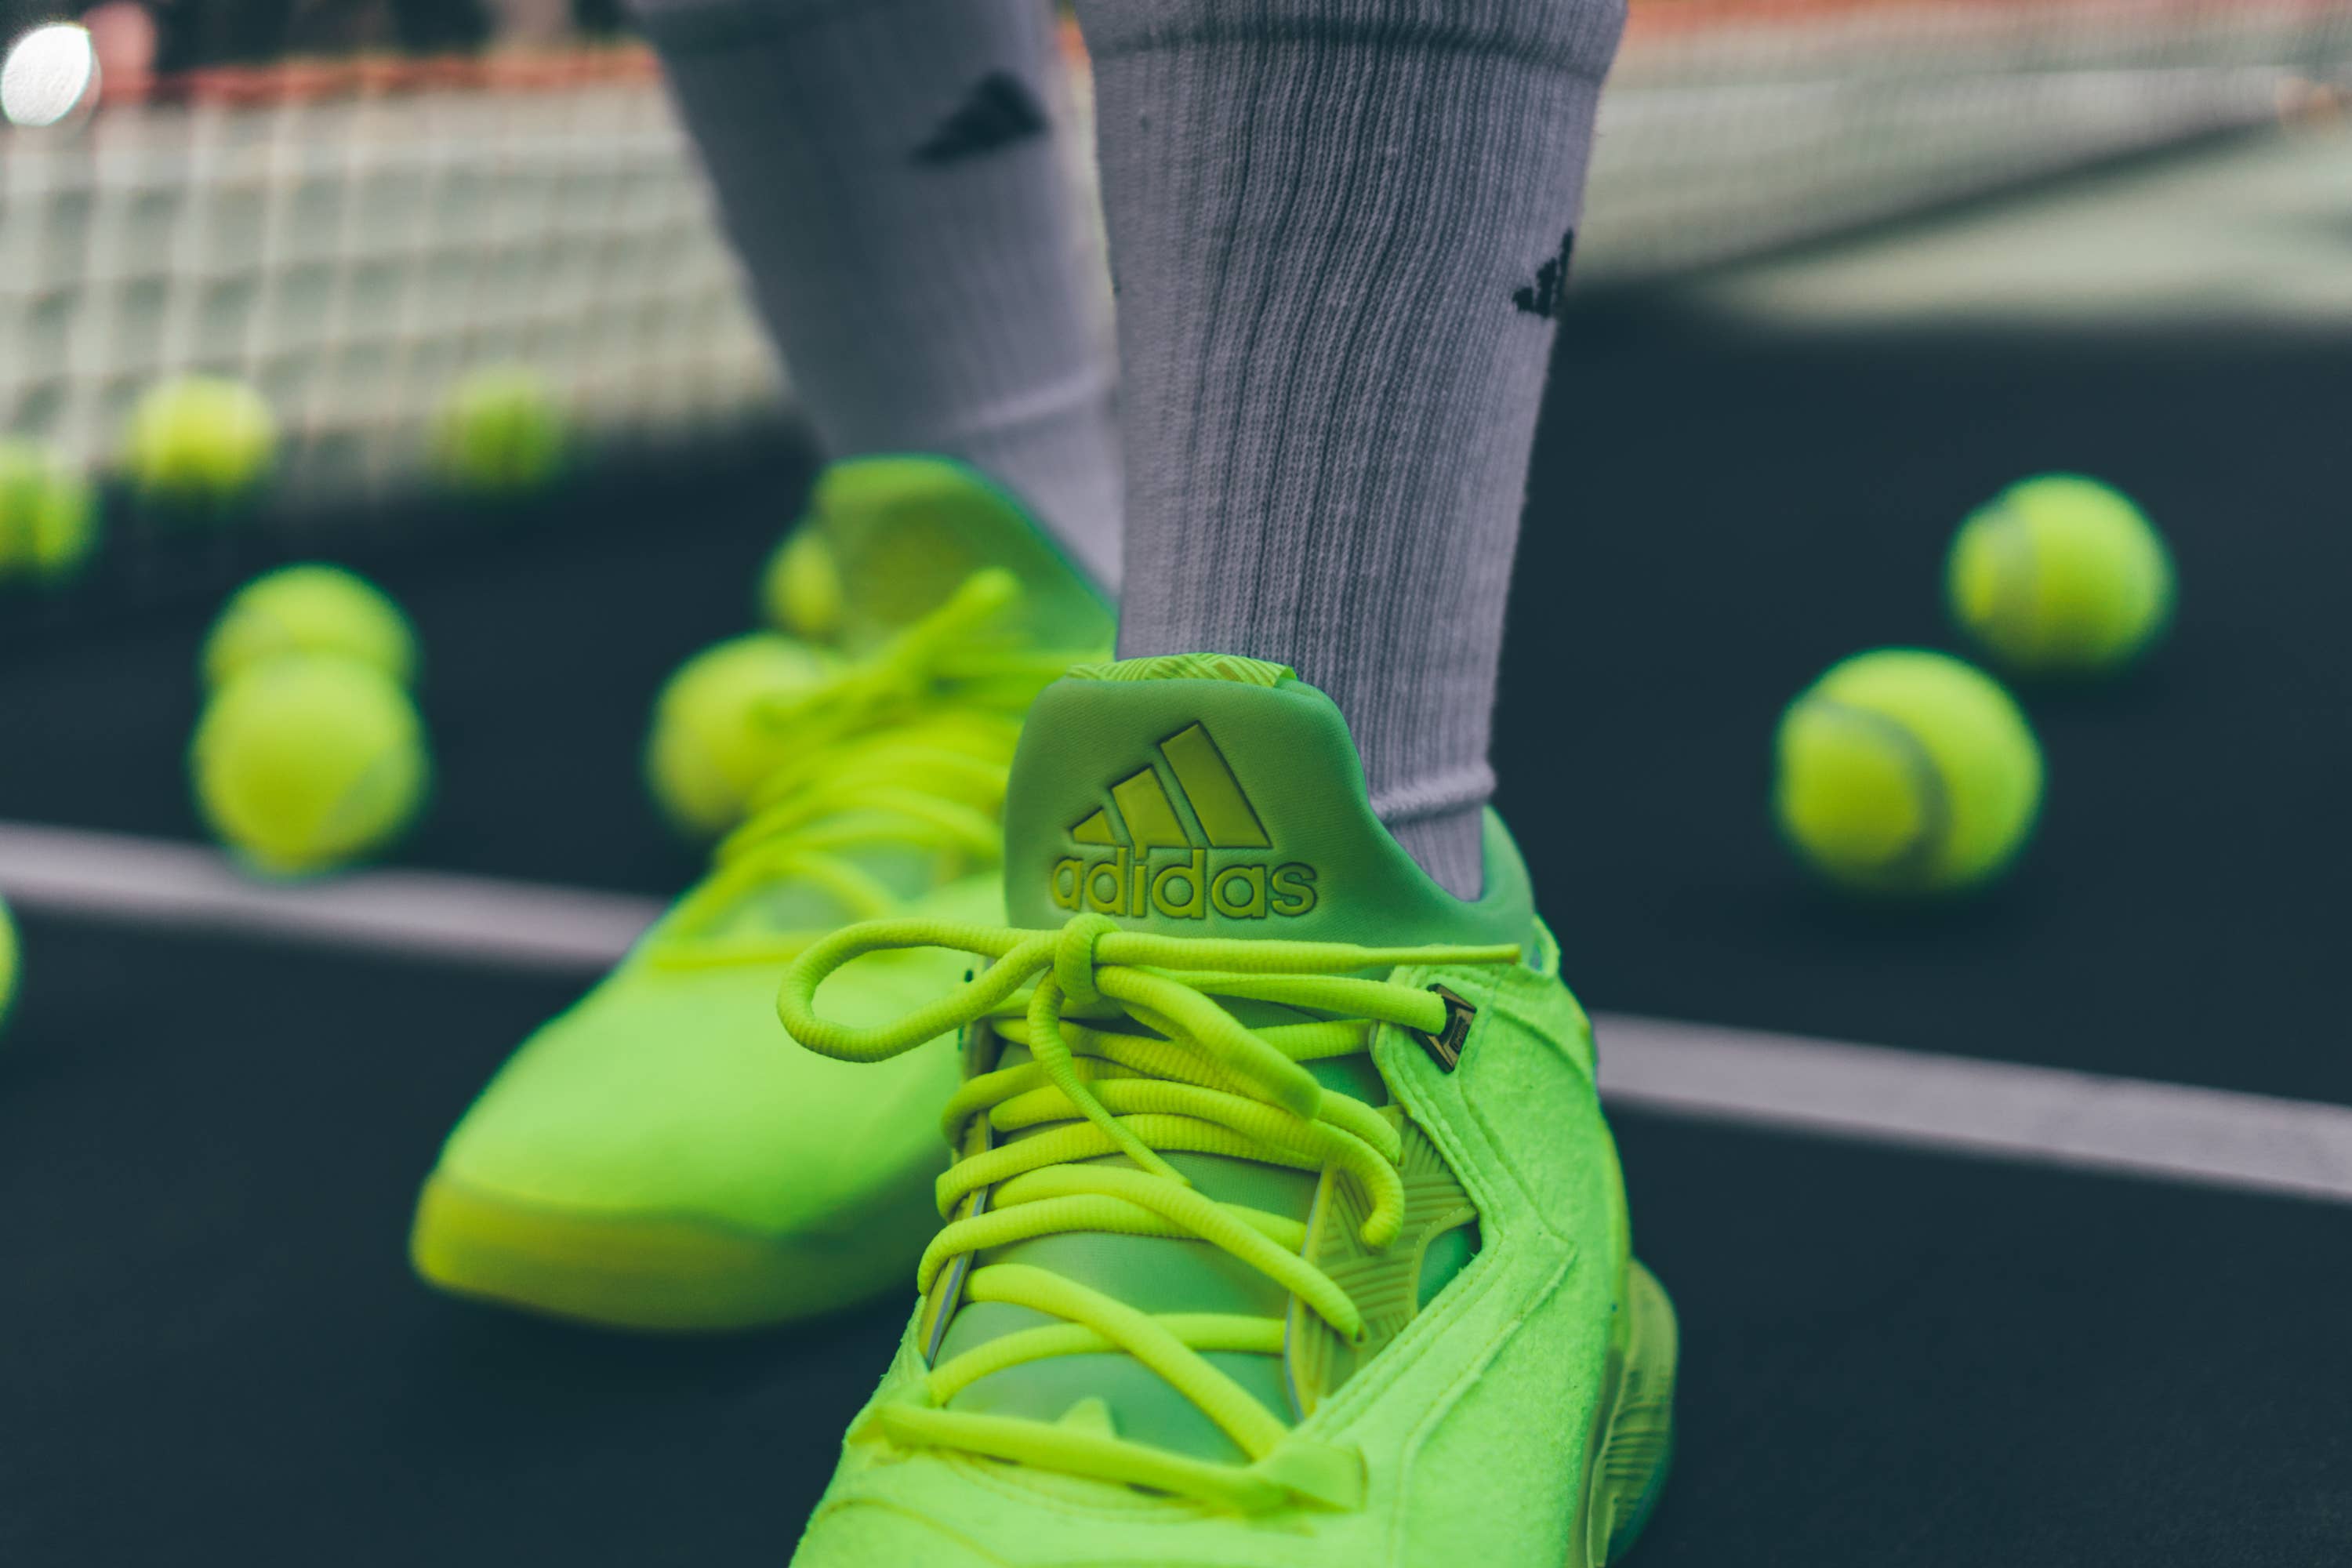 adidas D Lillard 2 Tennis Ball Release Date